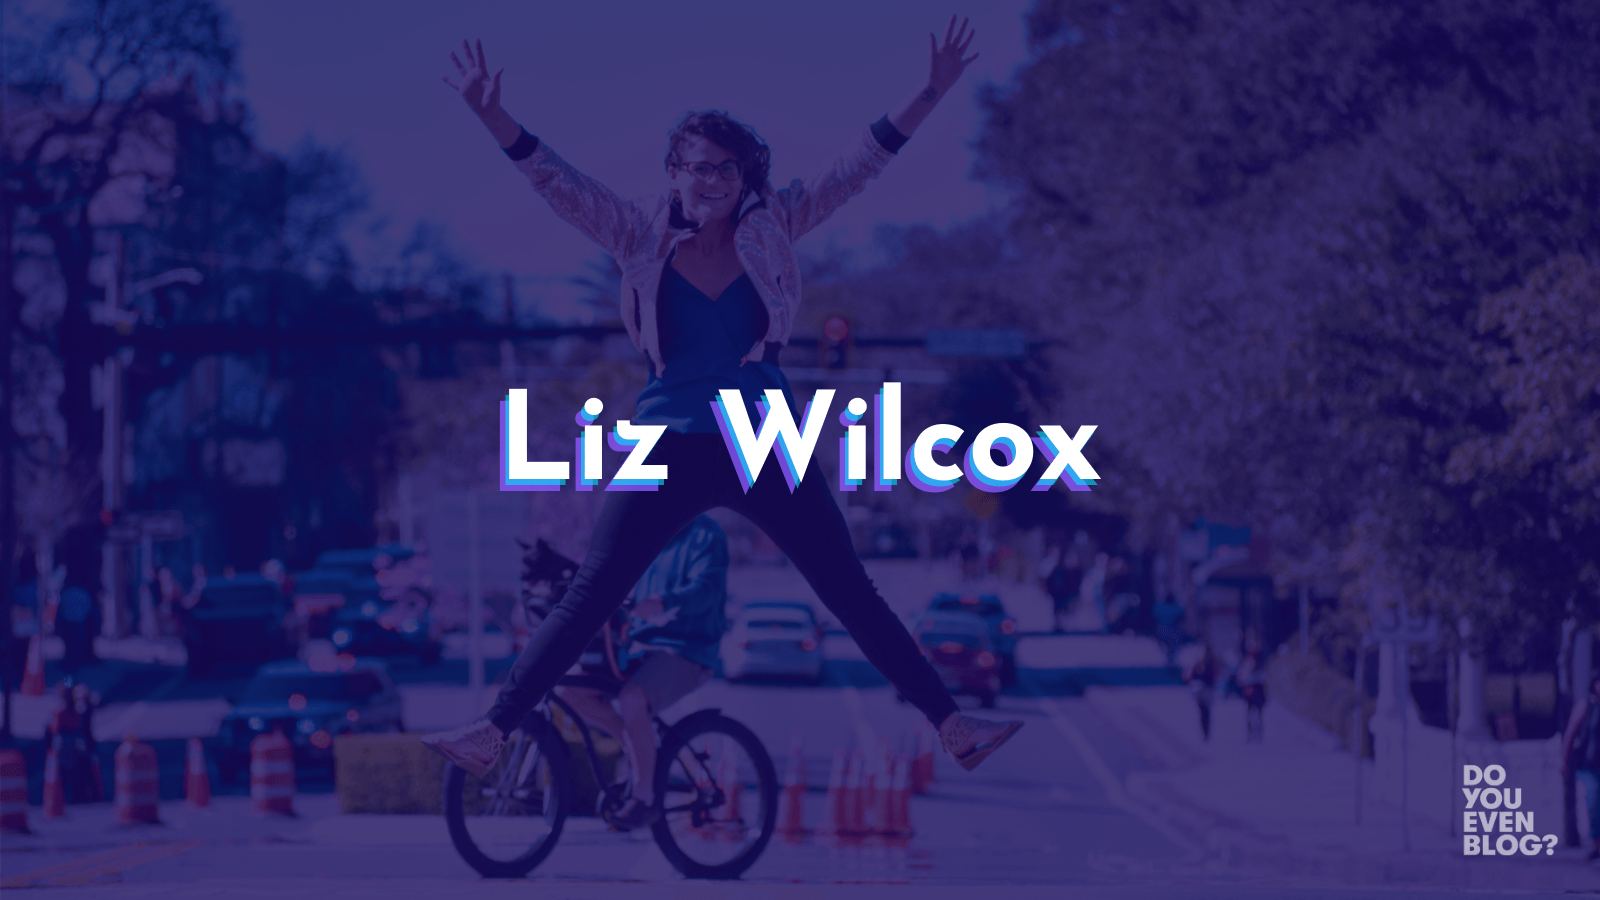 liz wilcox email marketing newsletters